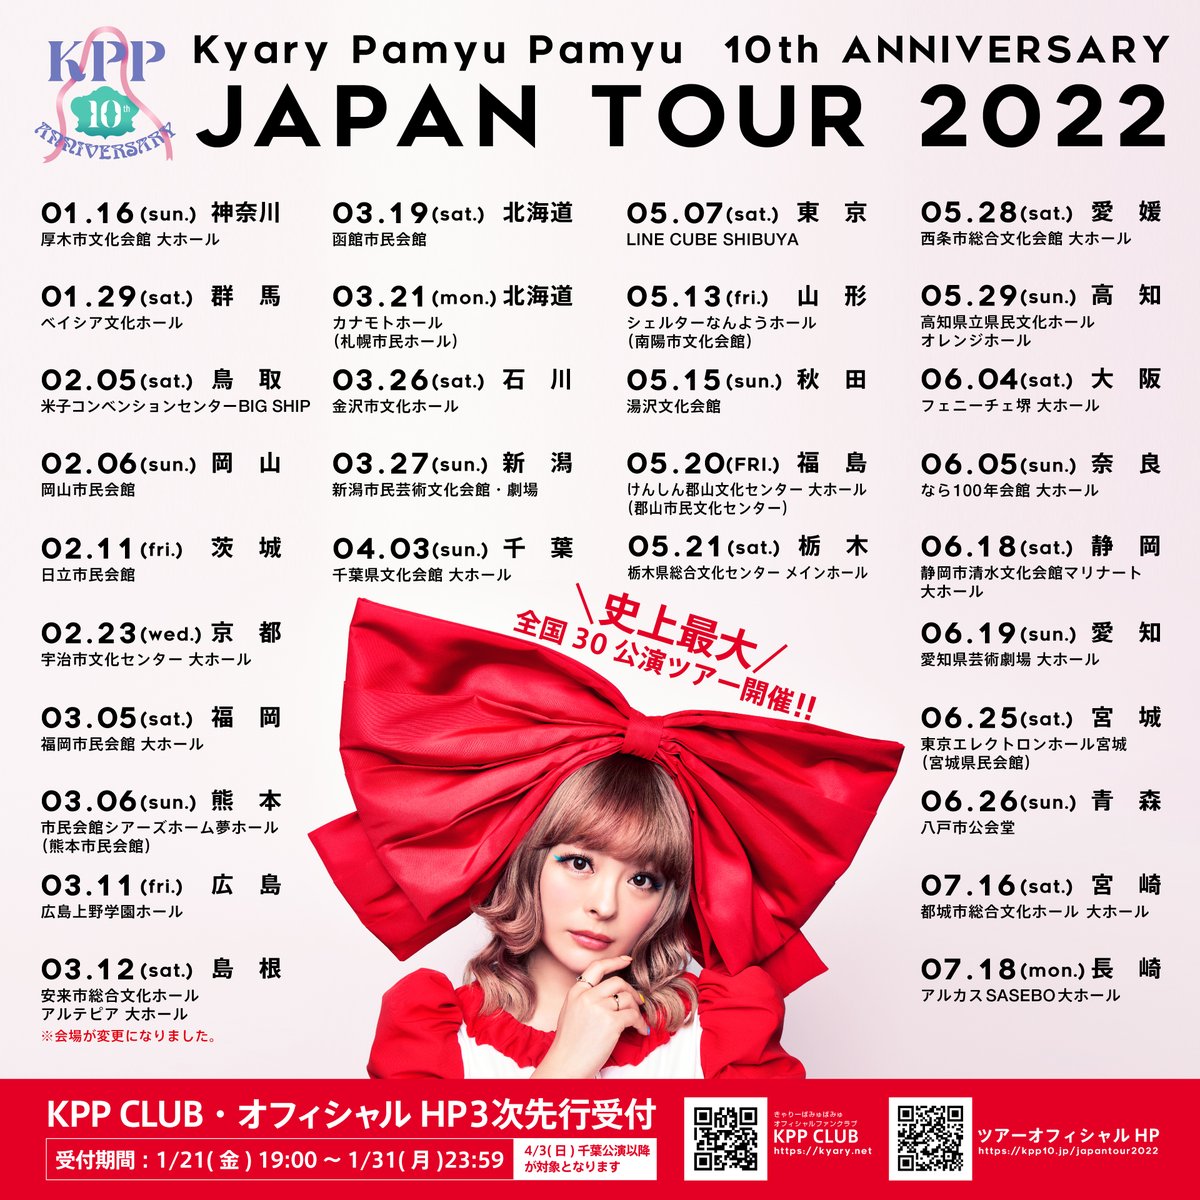 きゃりーぱみゅぱみゅ 10th ANNIVERSARY JAPAN TOUR 2022 CANDY WAVE（高知県立県民文化ホール）